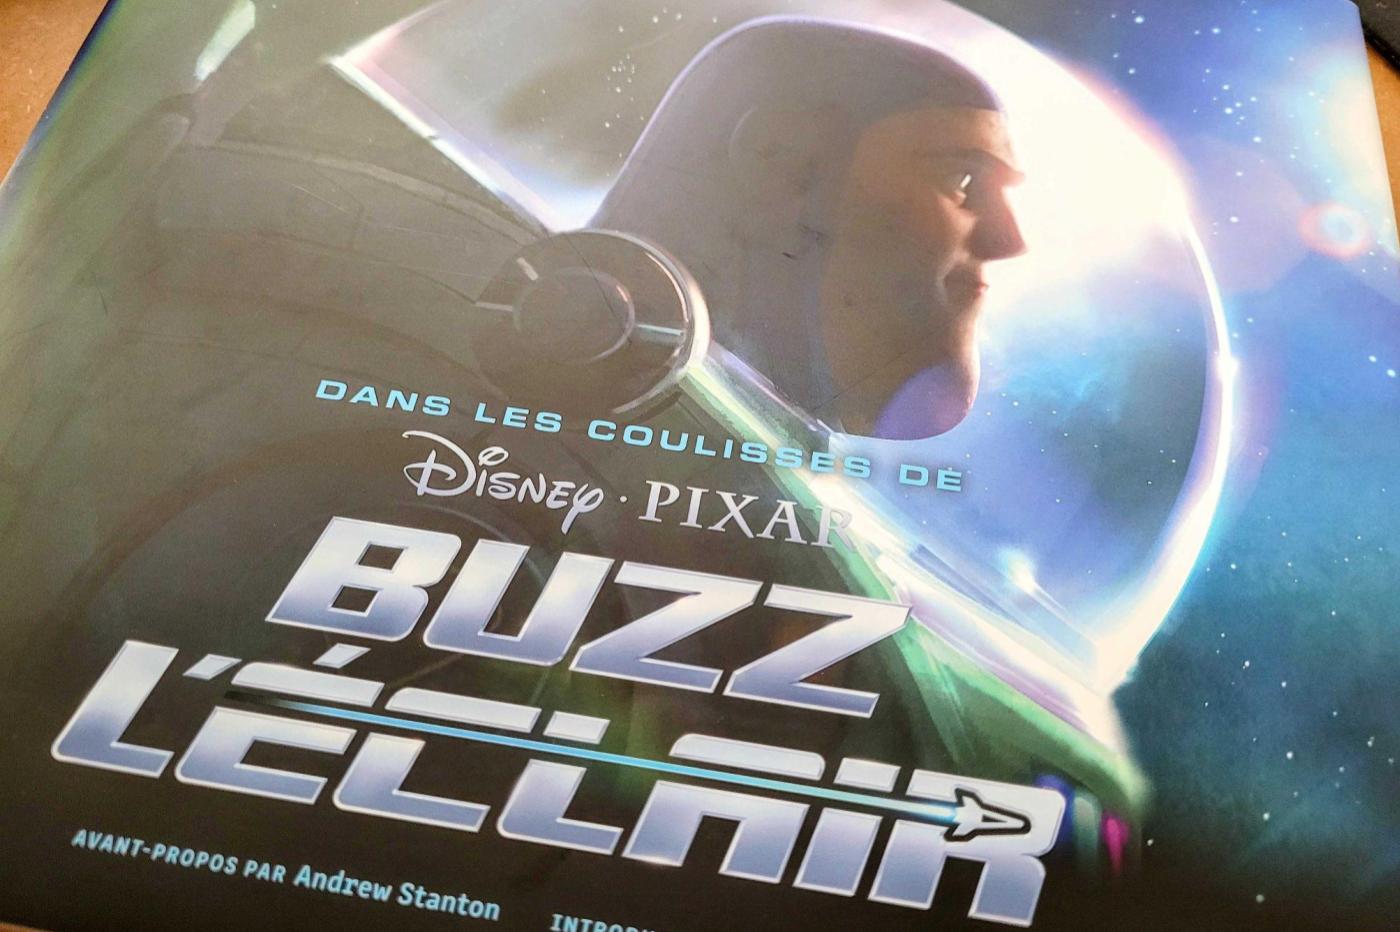 Buzz L'Eclair : ce qu'il faut savoir sur Buzz et le film - Blog